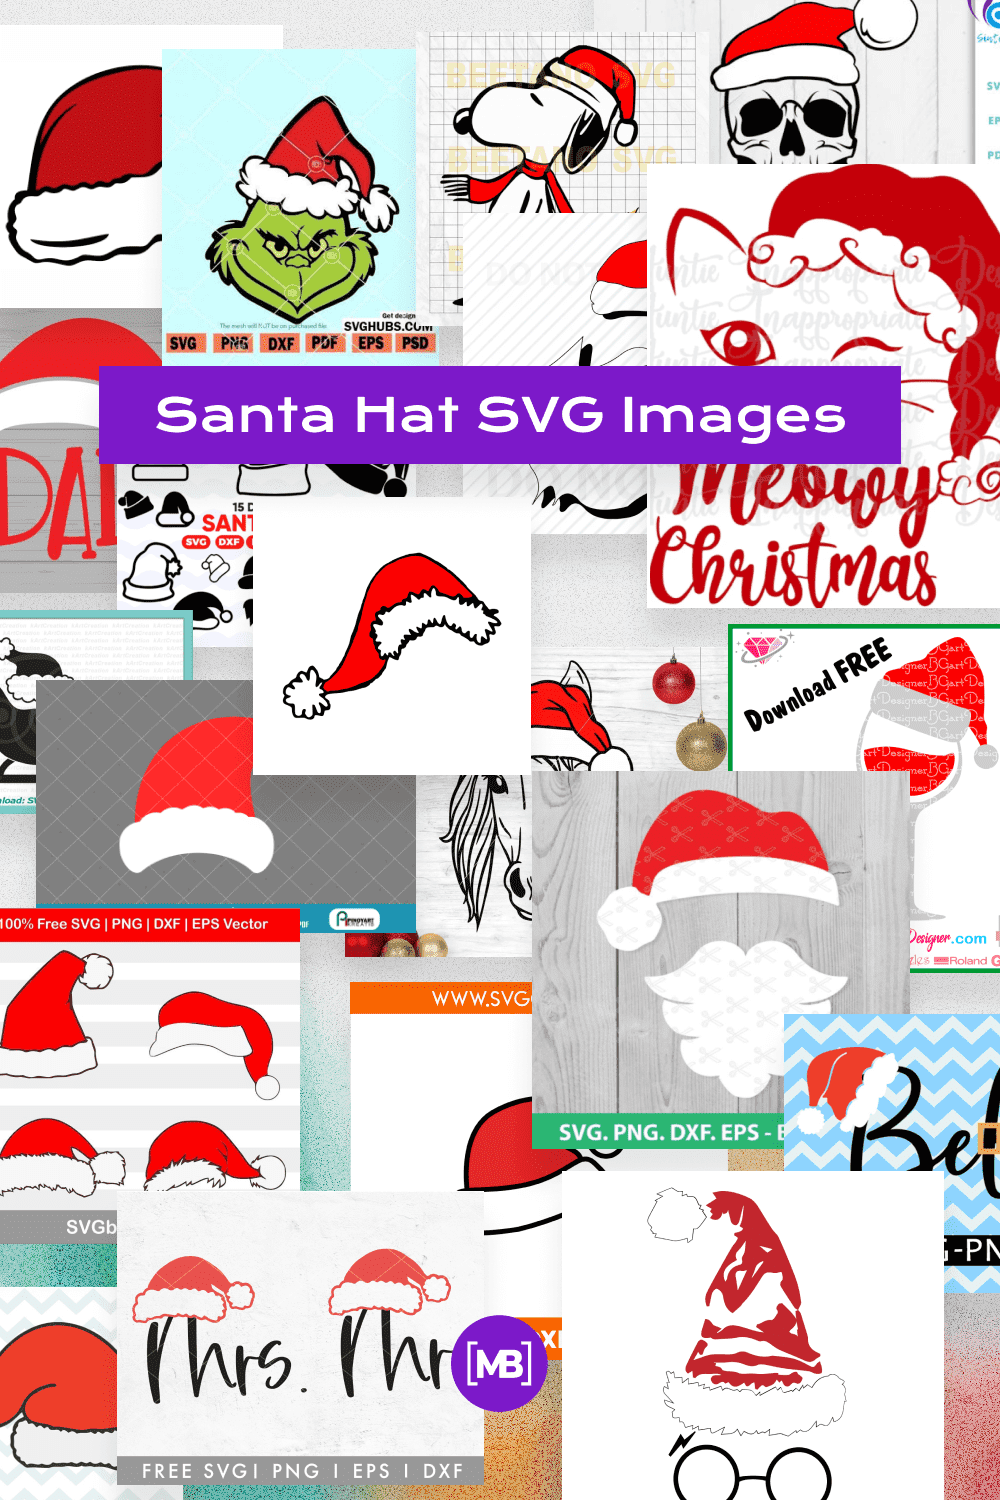 Santa Hat SVG Images Pinterest.